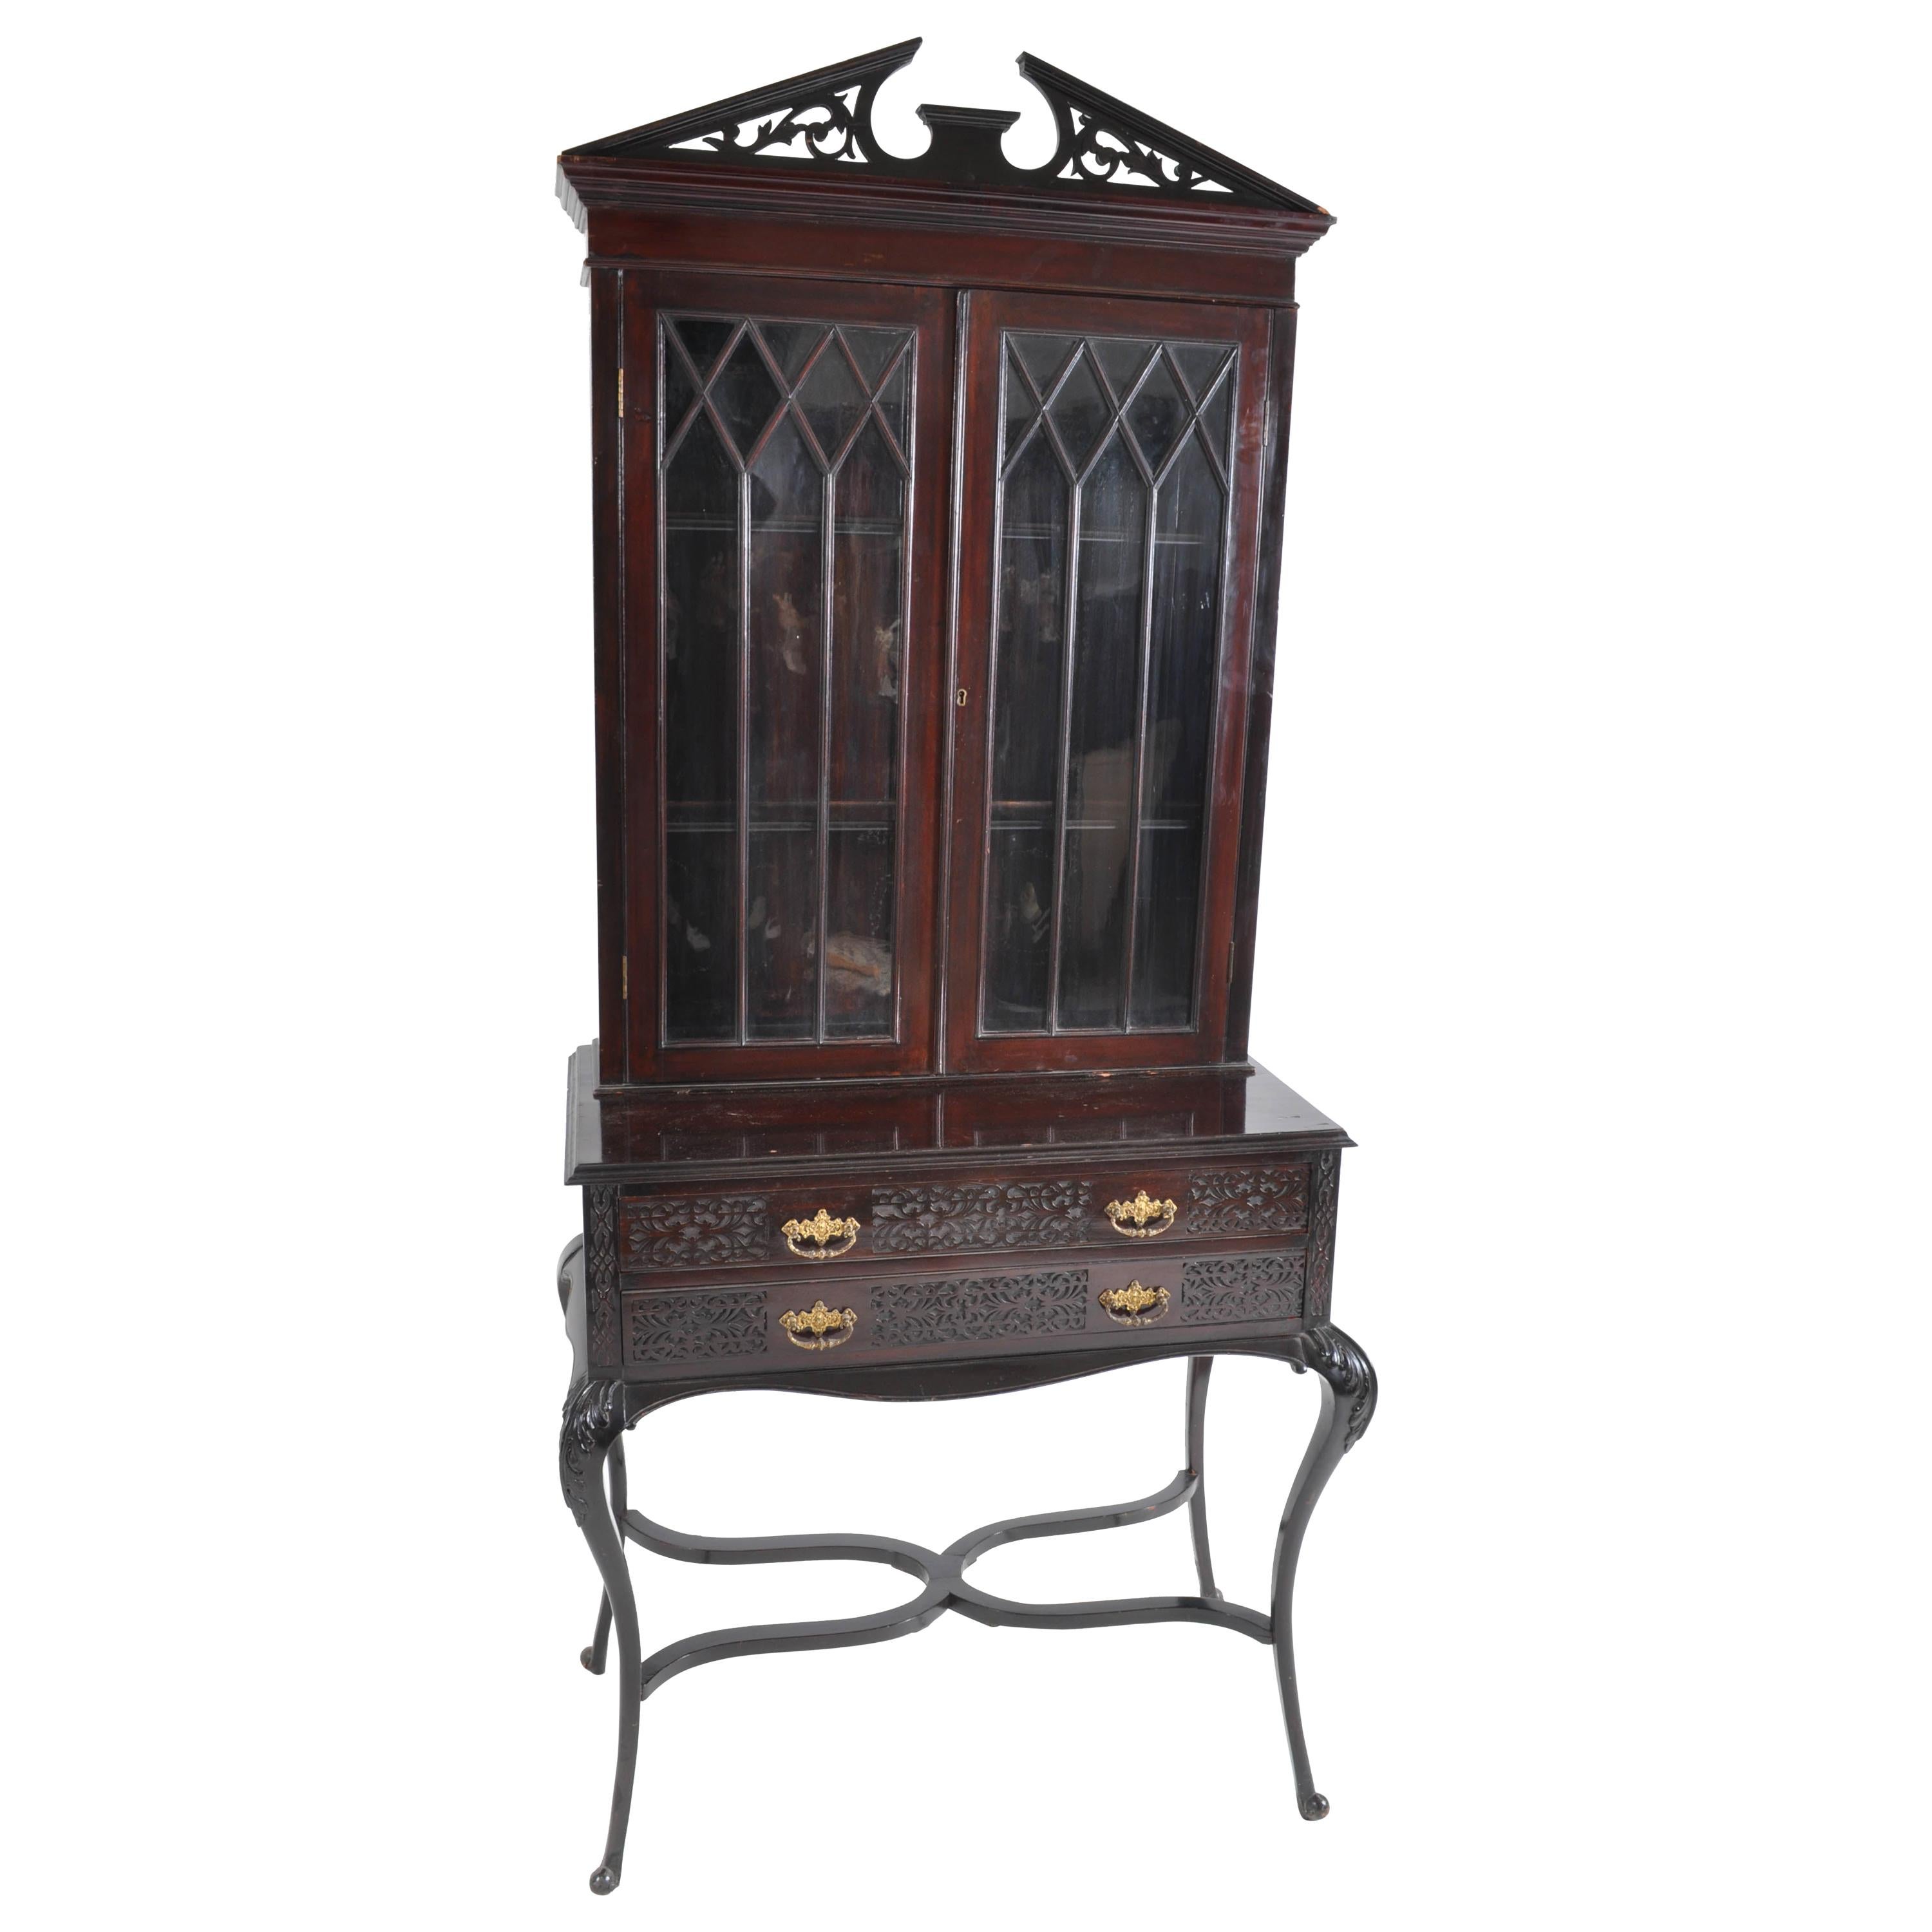 Antique English Ebonized Empire Style Cabinet / Hutch / Bookcase, circa 1870